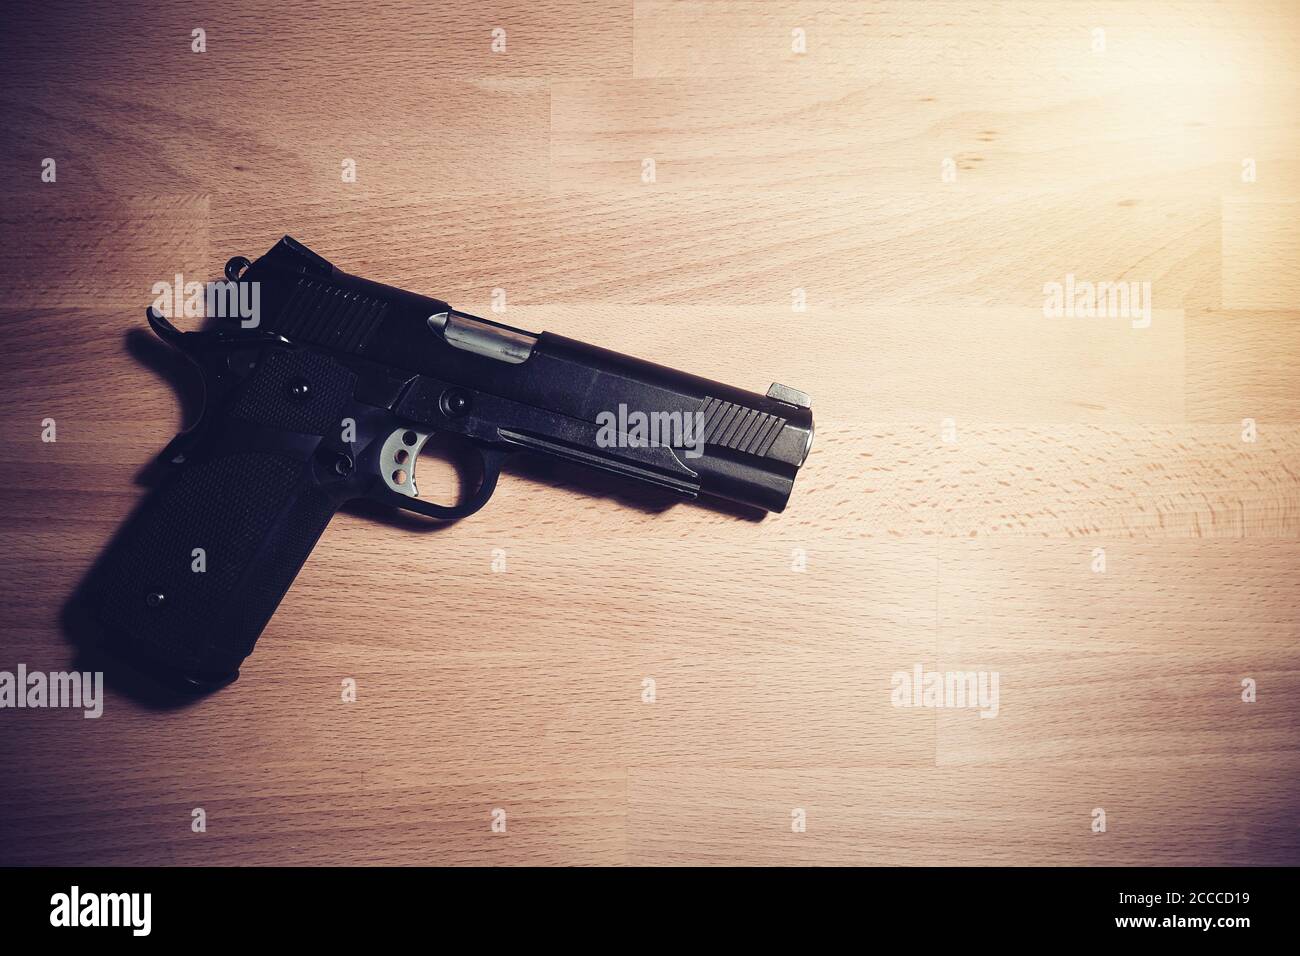 Concept de sécurité : canon noir sur une table en bois Banque D'Images